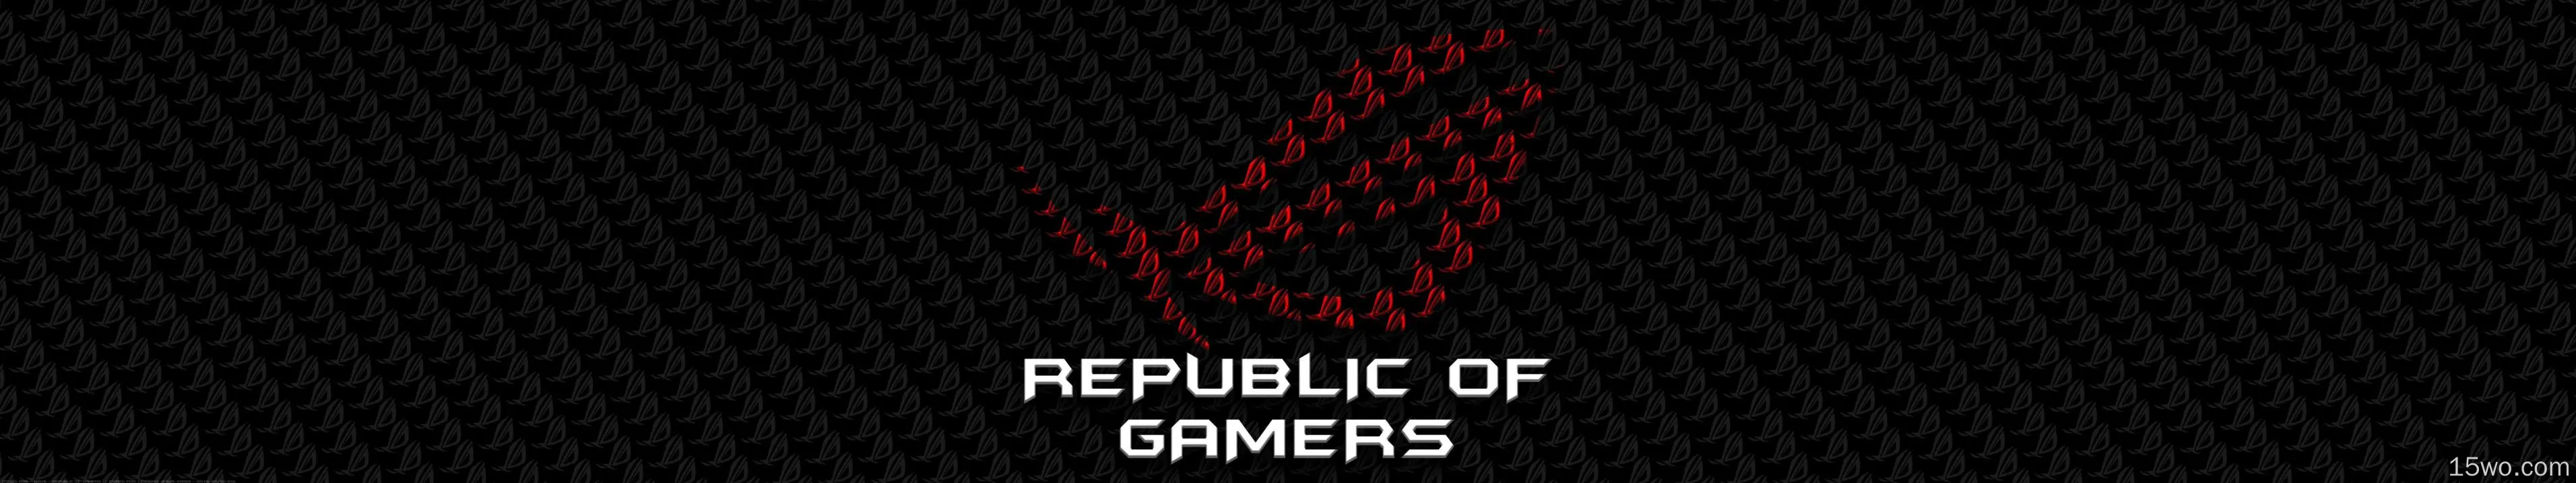 技术 Asus ROG Republic of Gamers 高清壁纸